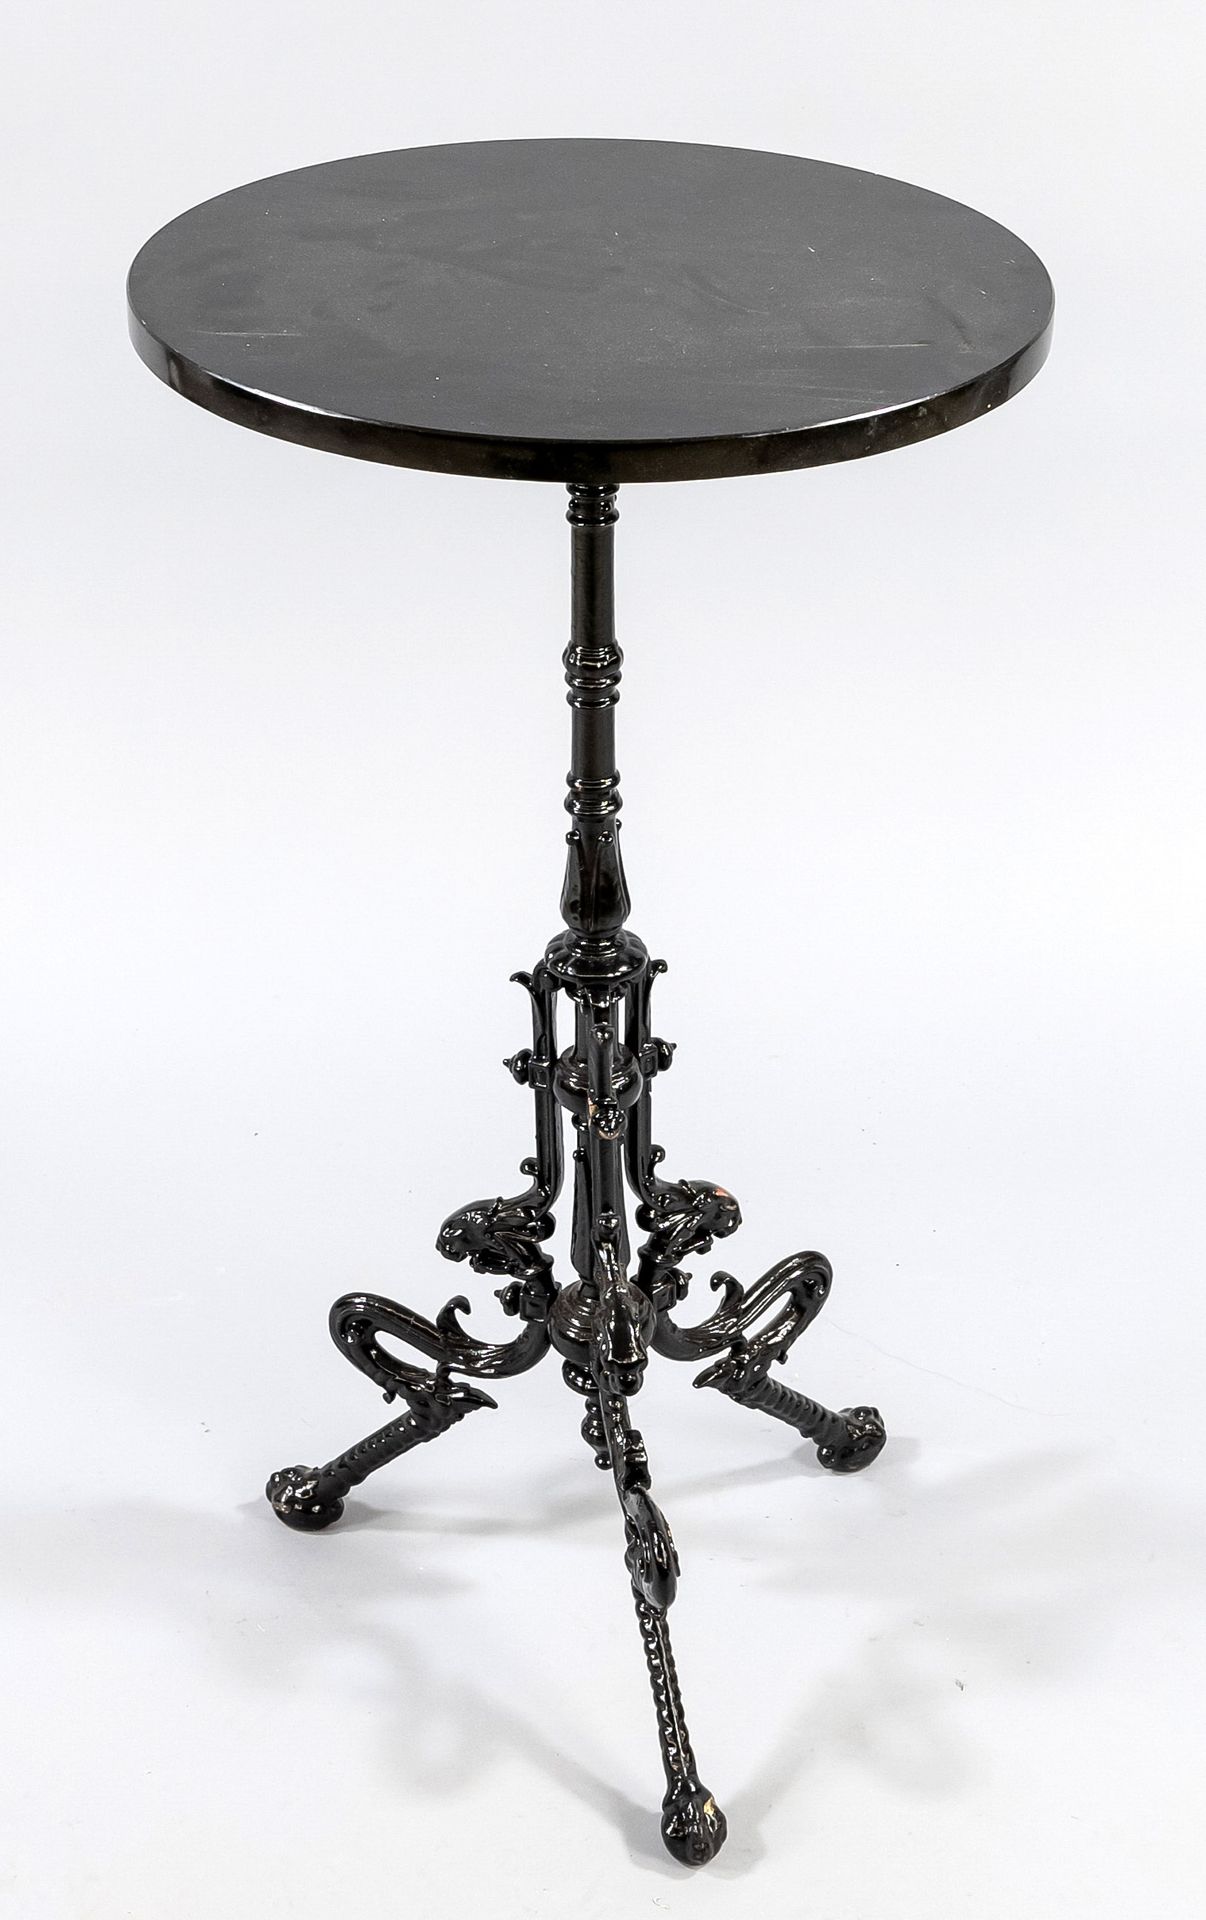 Null 小酒桌，20世纪，铸铁，三条腿的底座，黑色漆面。黑色大理石圆形桌面，高78厘米。